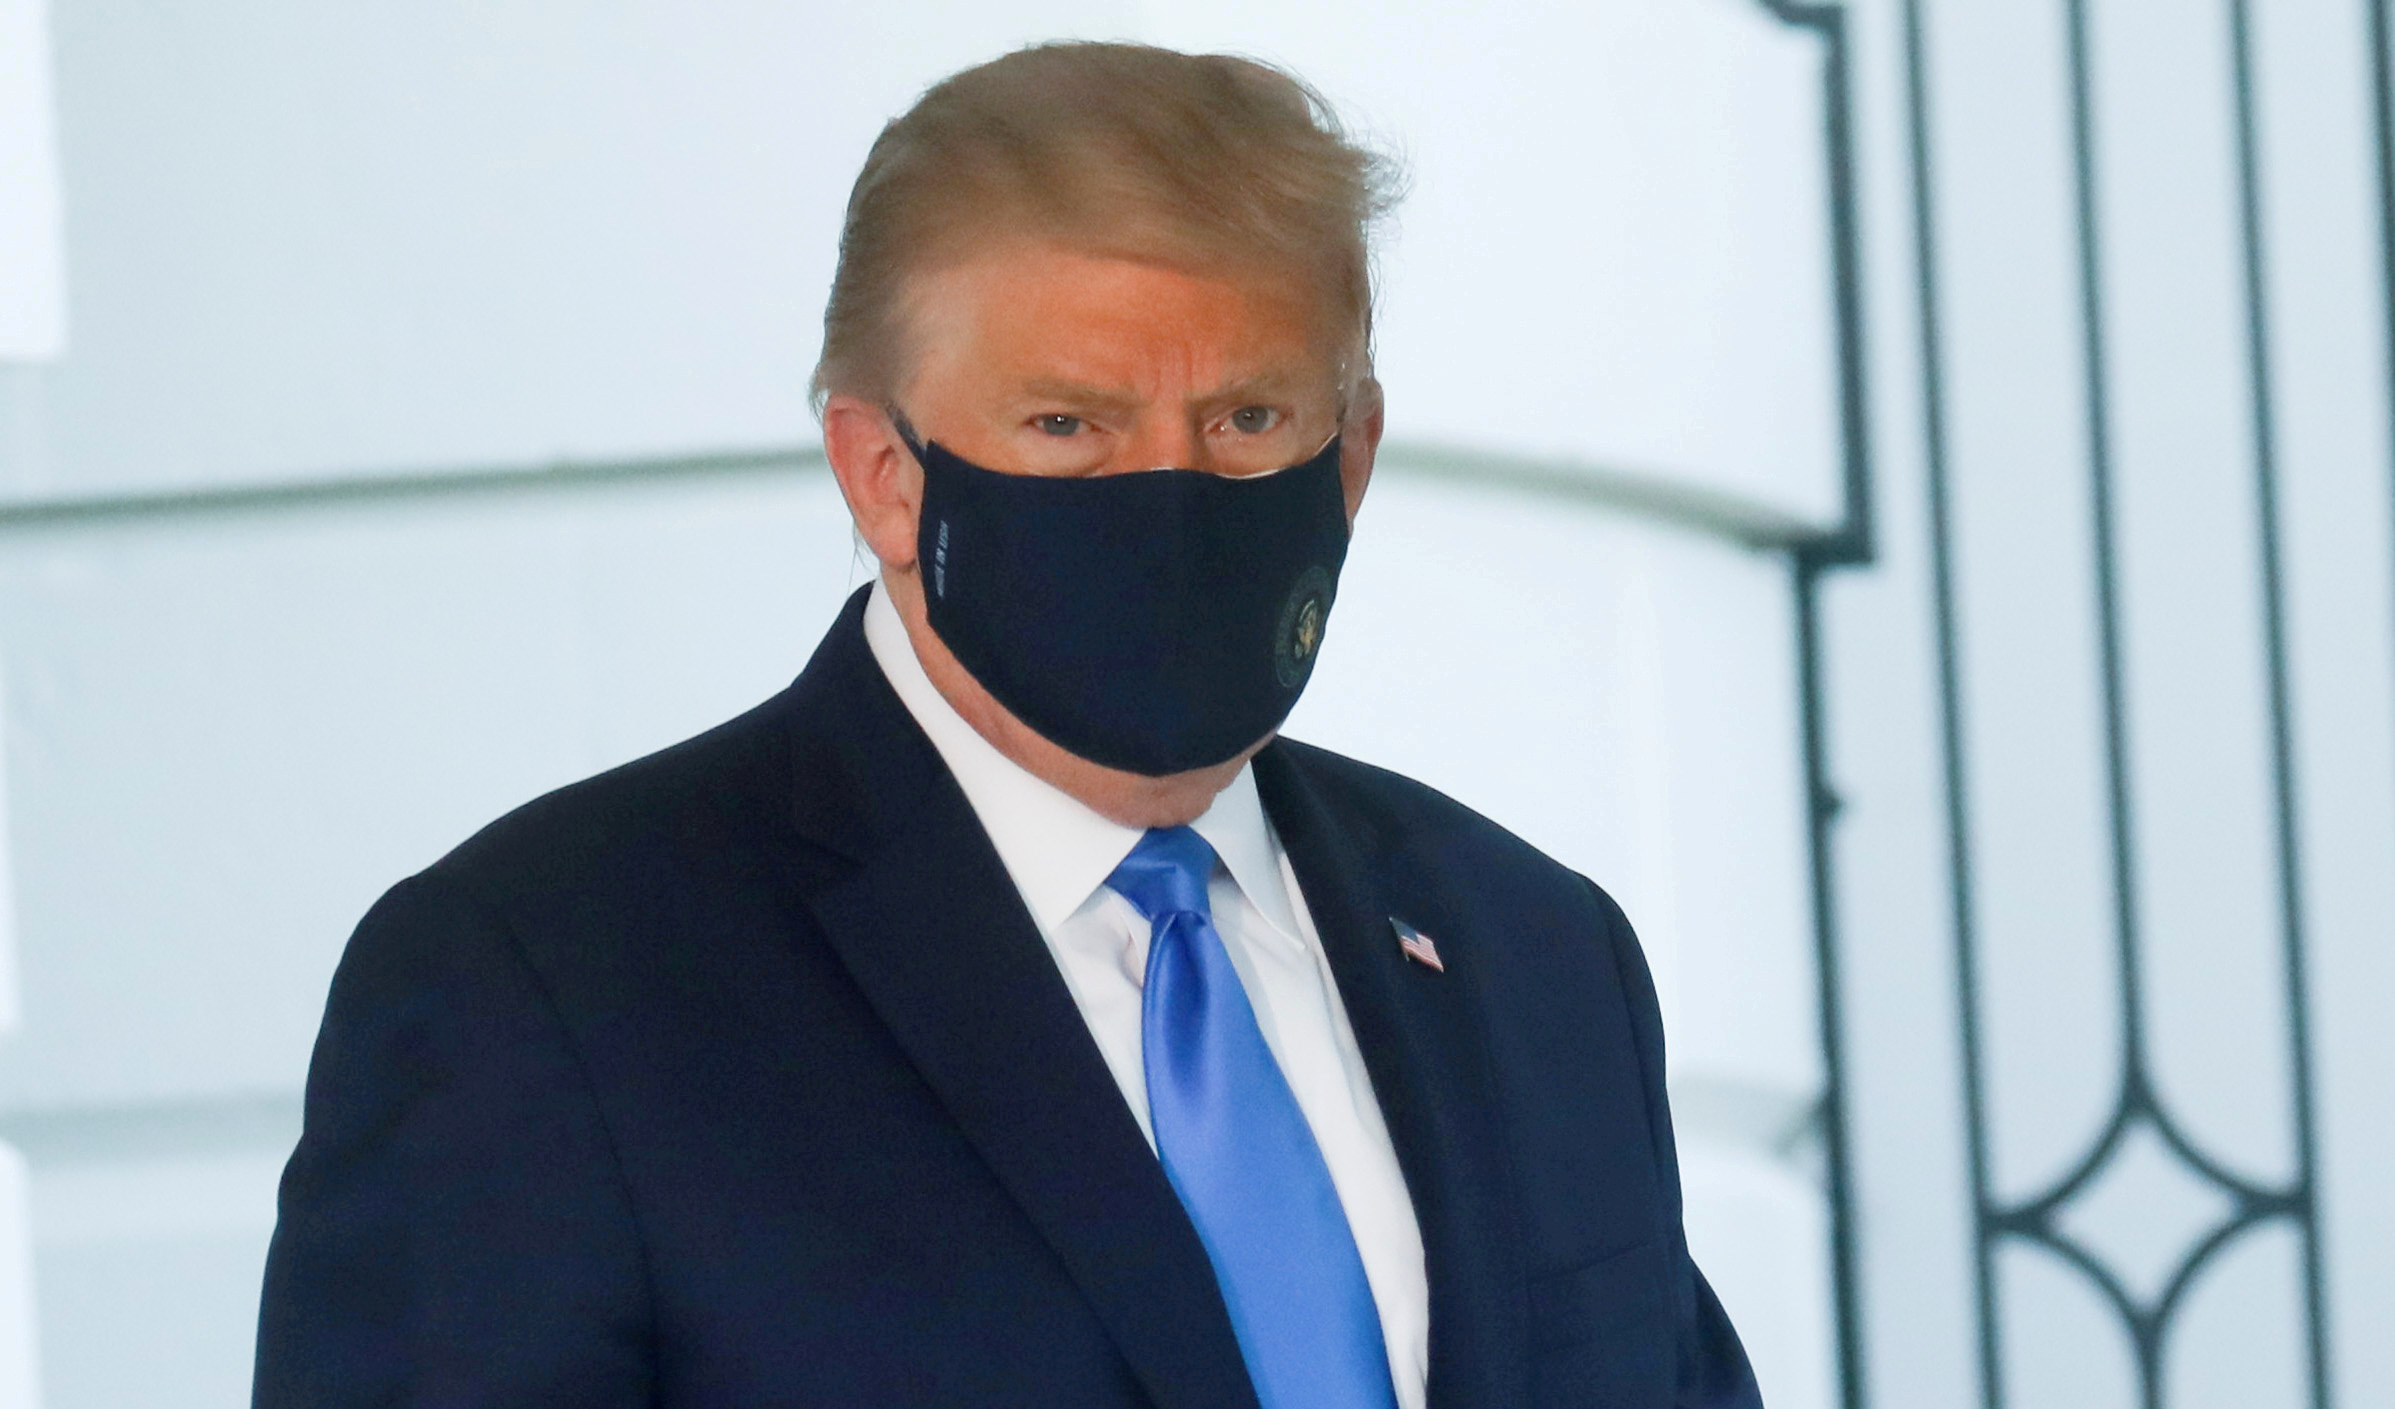 El presidente de Estados Unidos, Donald Trump con una máscara facial. REUTERS/Leah Millis/File Photo/File Photo